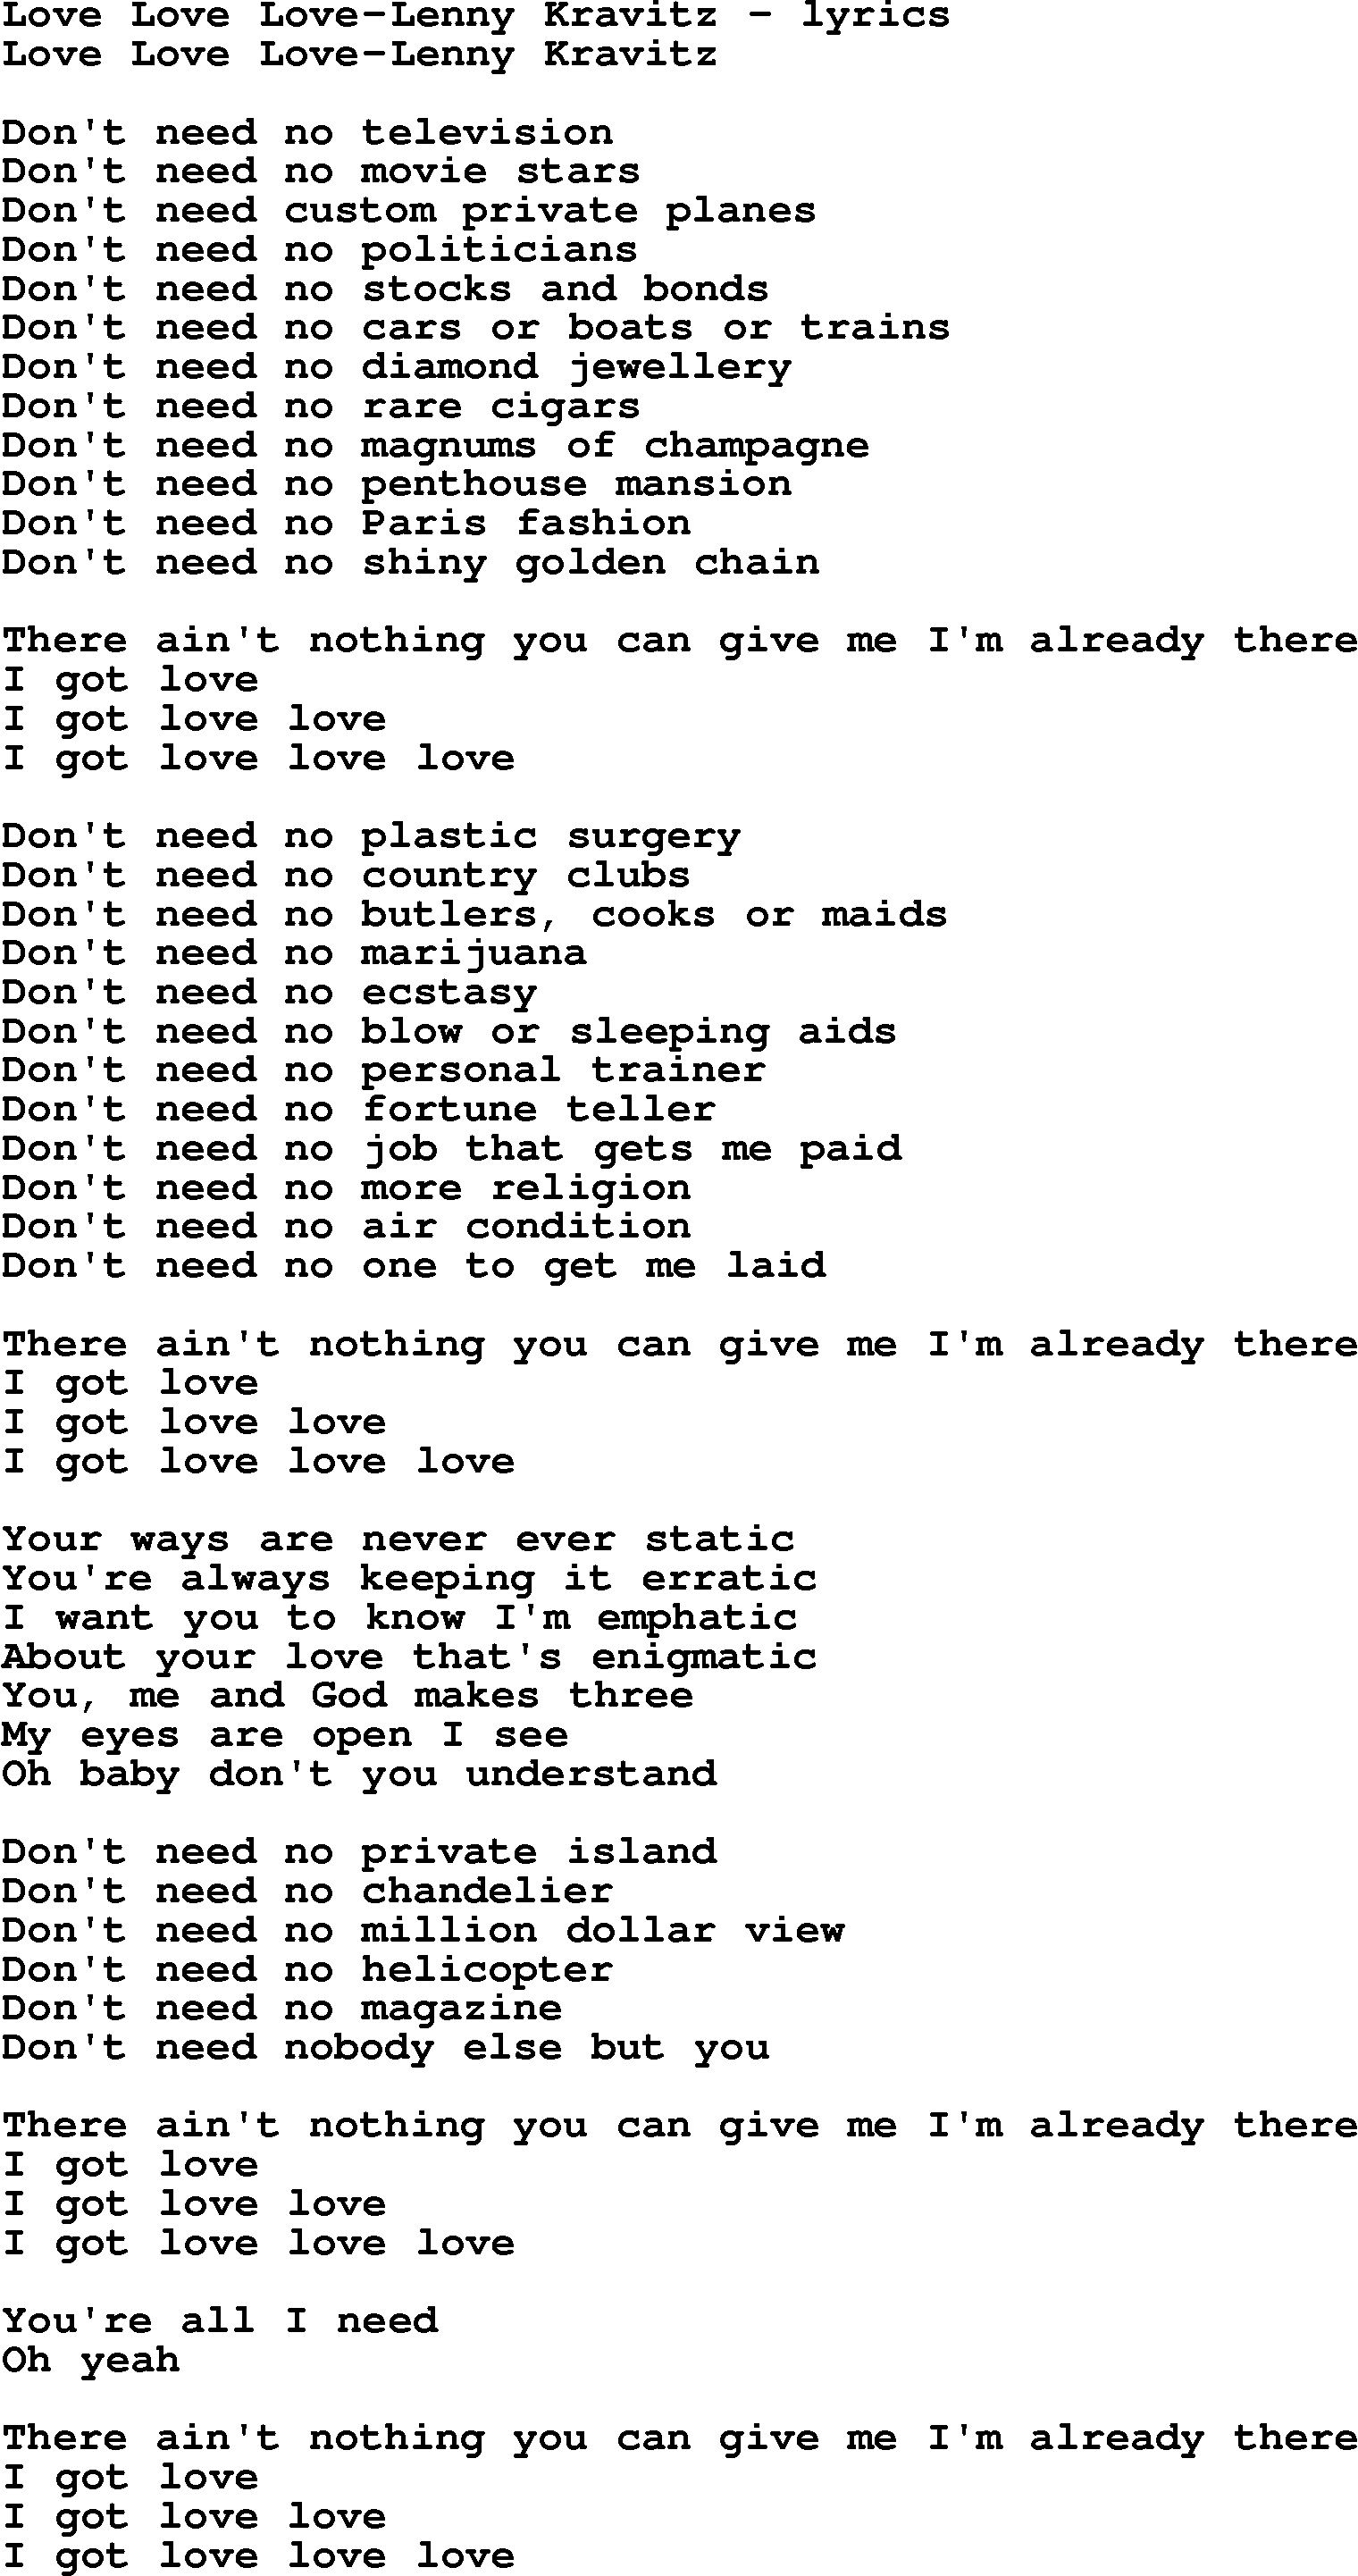 Love Song Lyrics for: Love Love Love-Lenny Kravitz